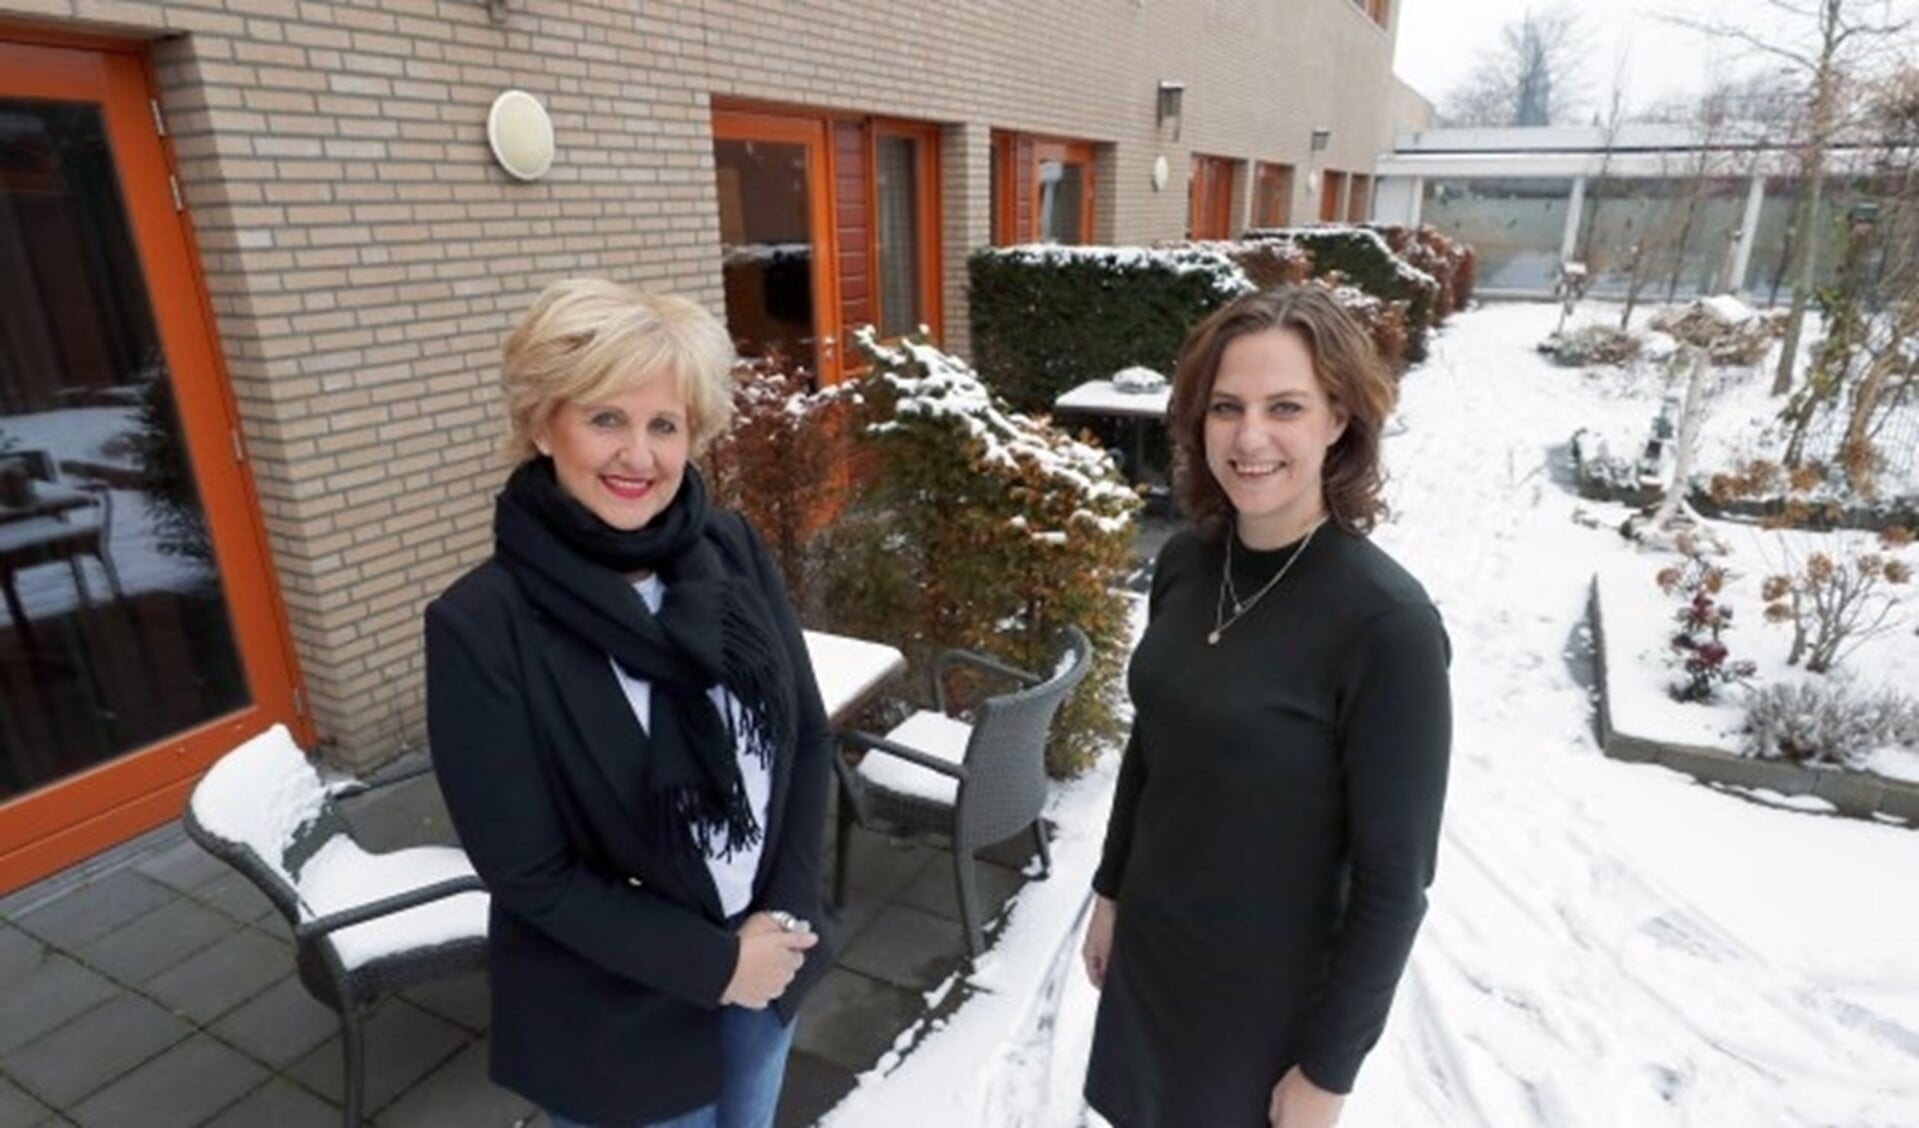 Ellen Lodewijks (r) en Rian de wit (l) willen een overkapping realiseren bij hospice Merefelt. Foto: Bert Jansen.